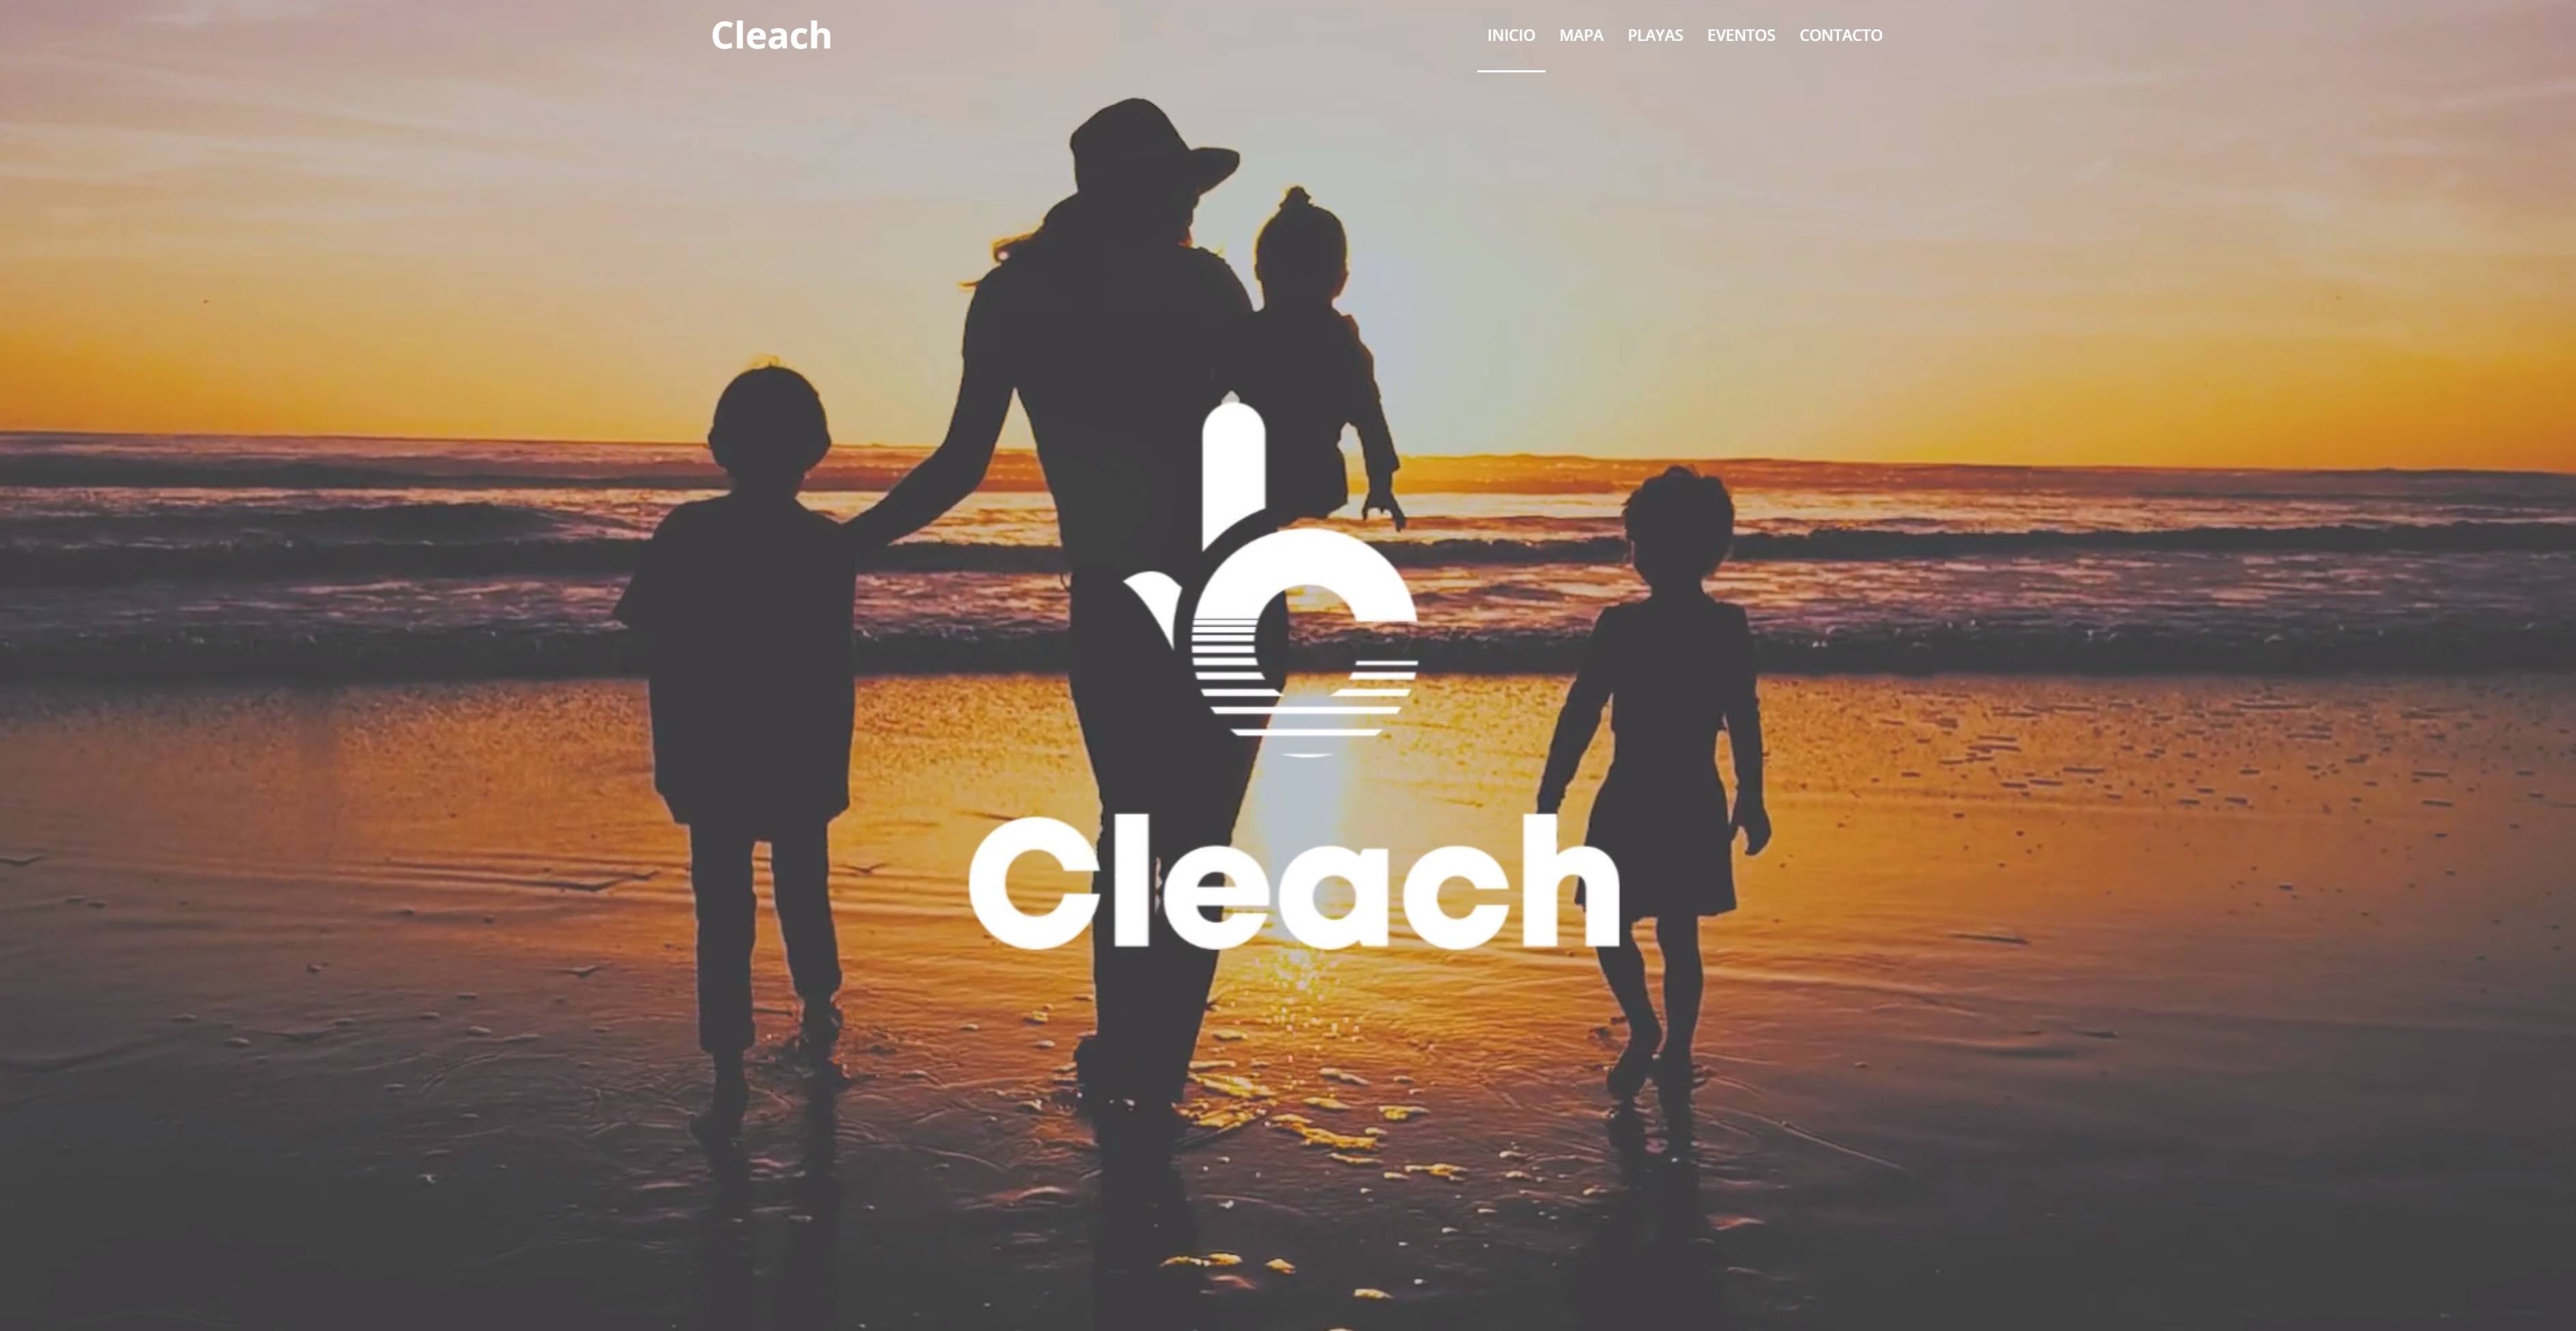 Cleach